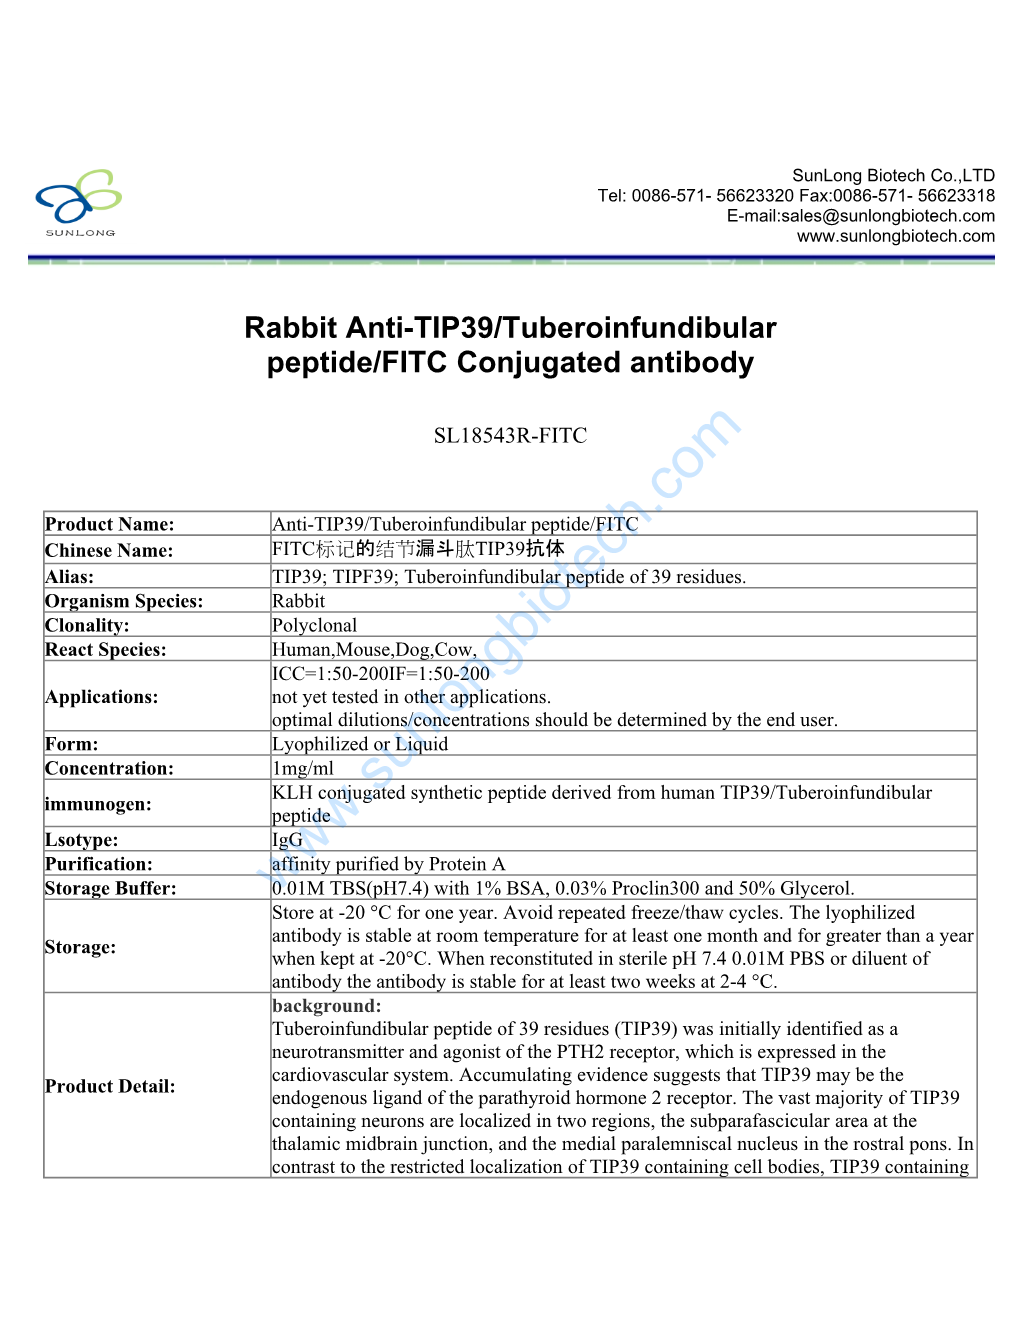 Rabbit Anti-TIP39/Tuberoinfundibular Peptide/FITC Conjugated Antibody